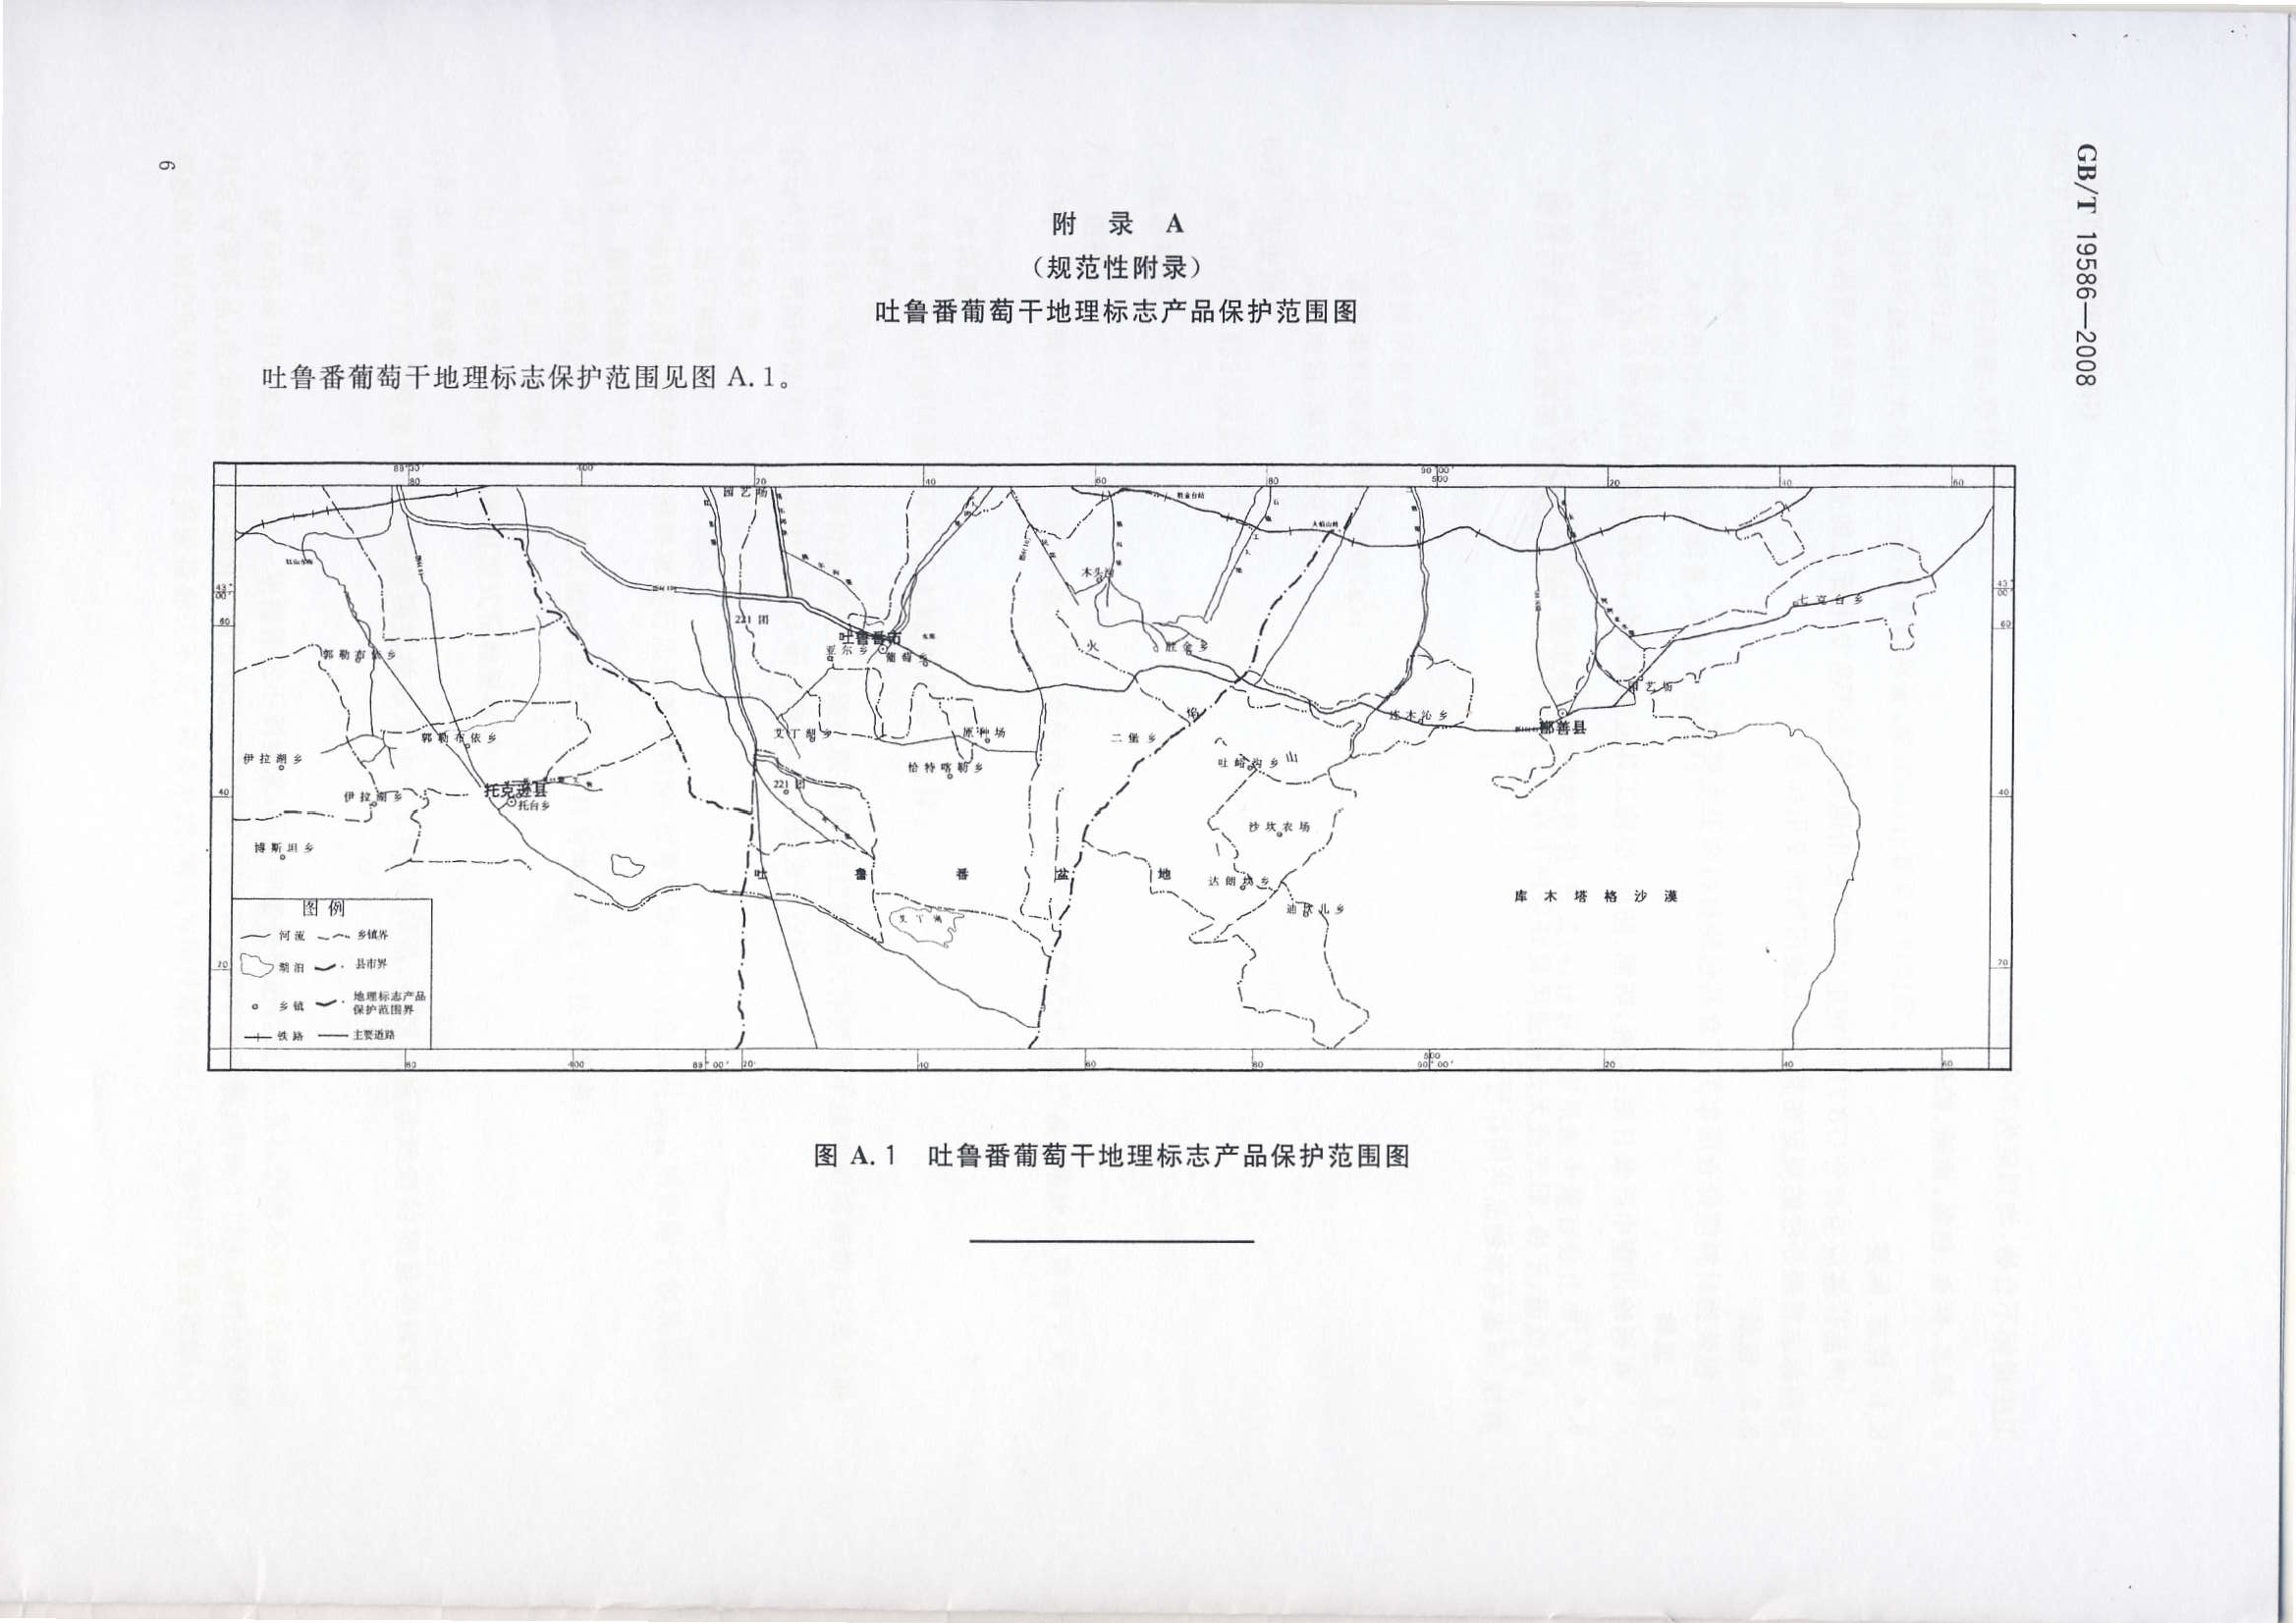 吐魯番葡萄乾地理標誌產品保護範圍圖